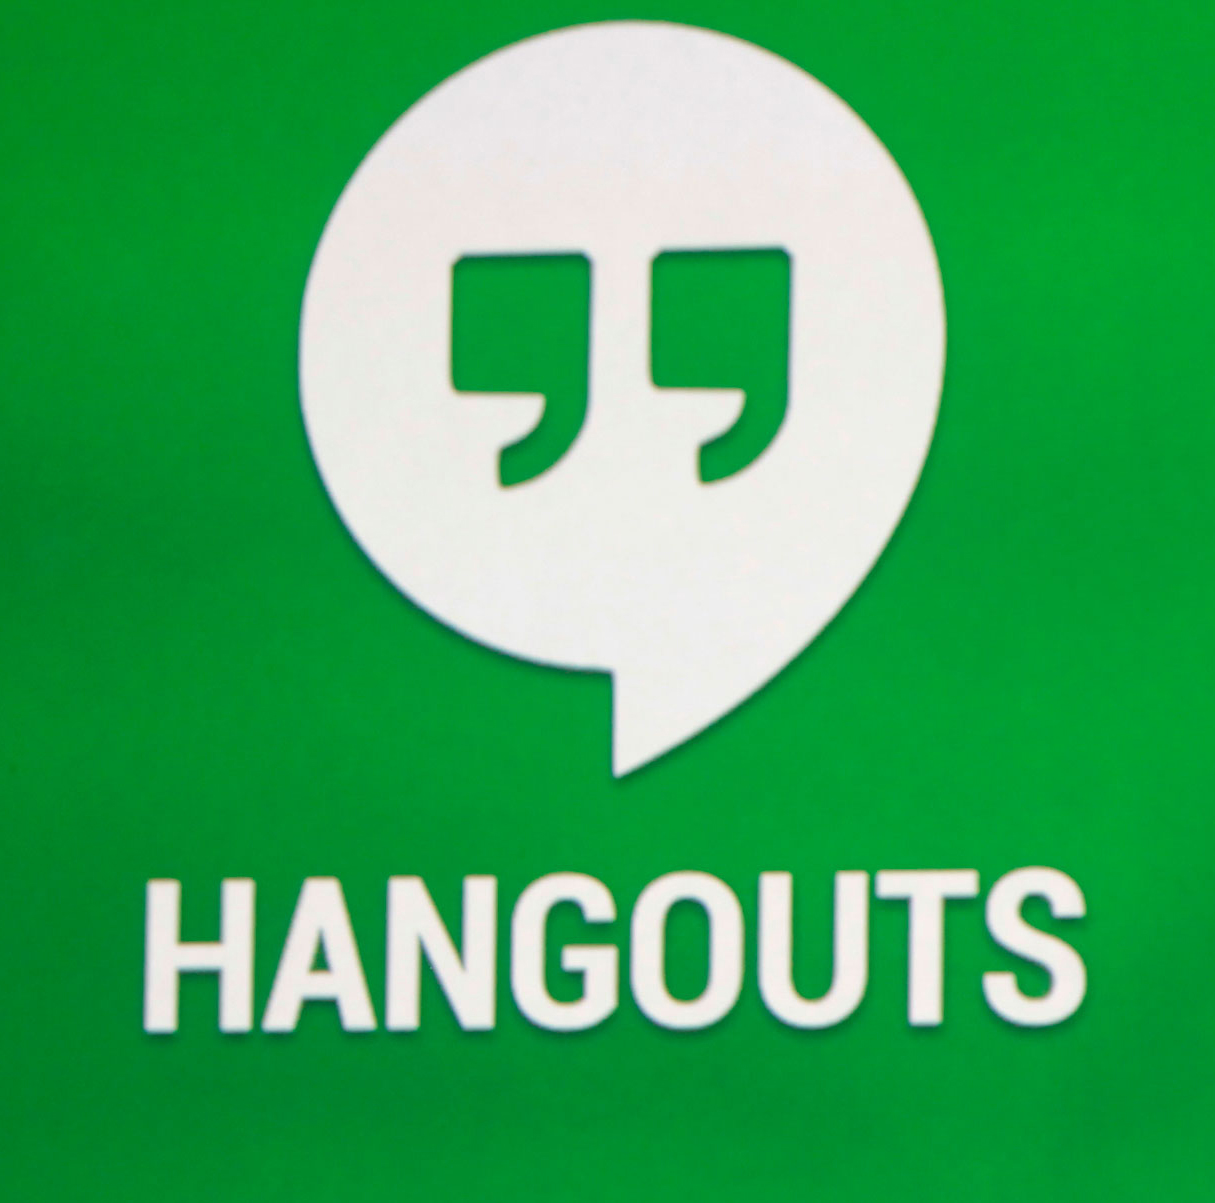 Google hangouts app for desktop